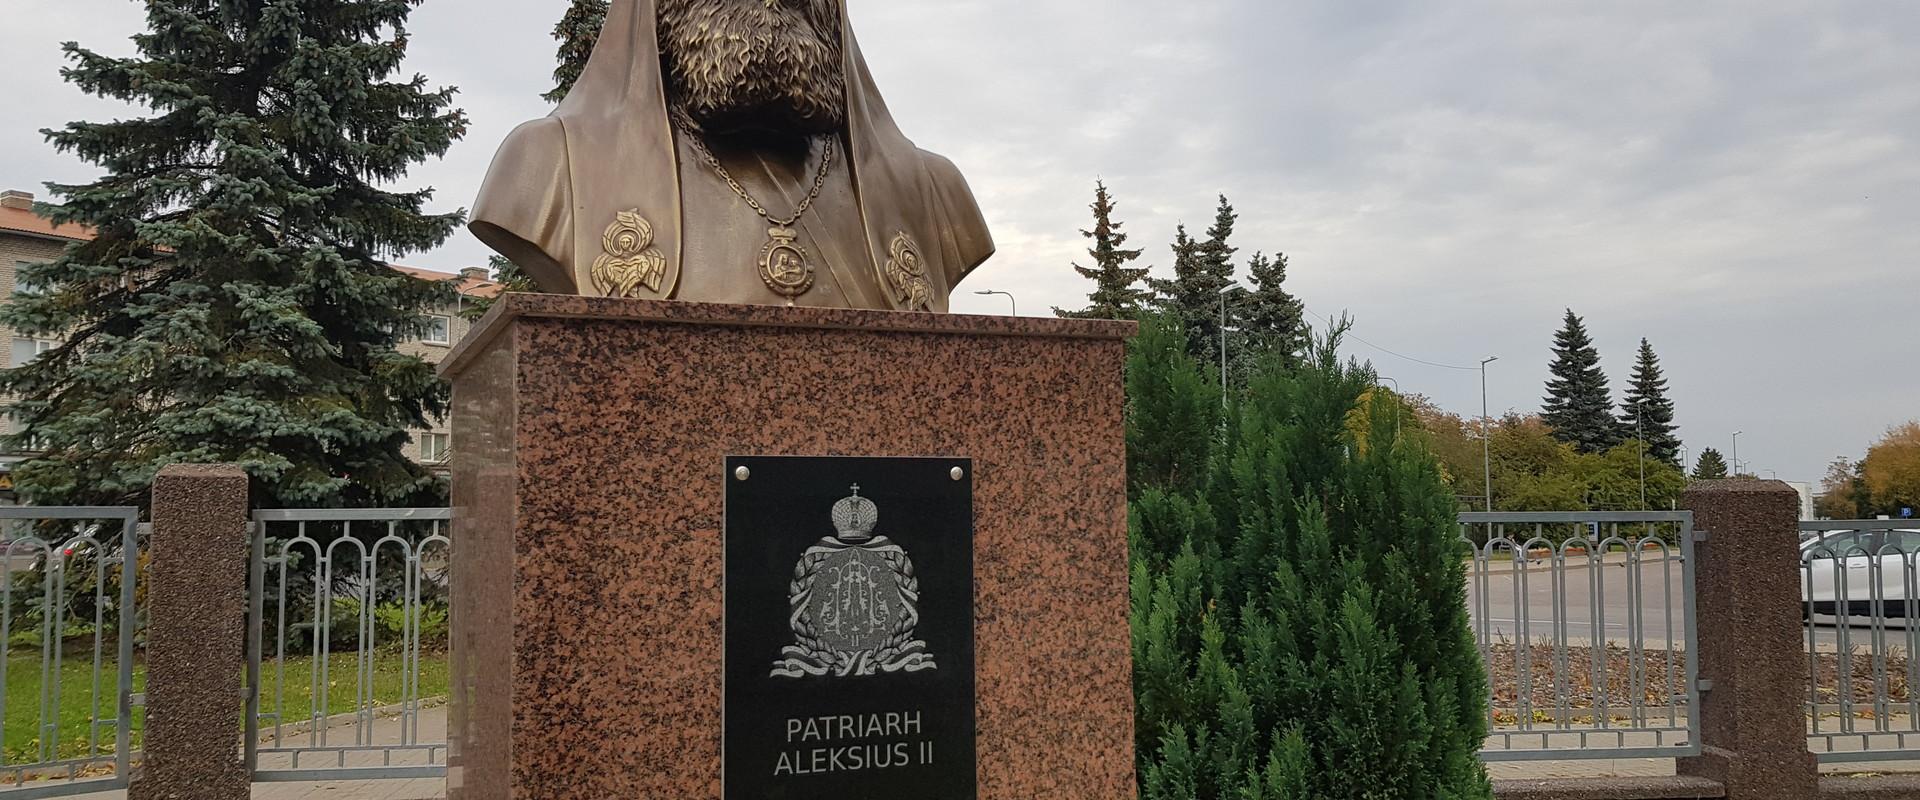 Patriarh Aleksius II mälestussammas, pronksist büst